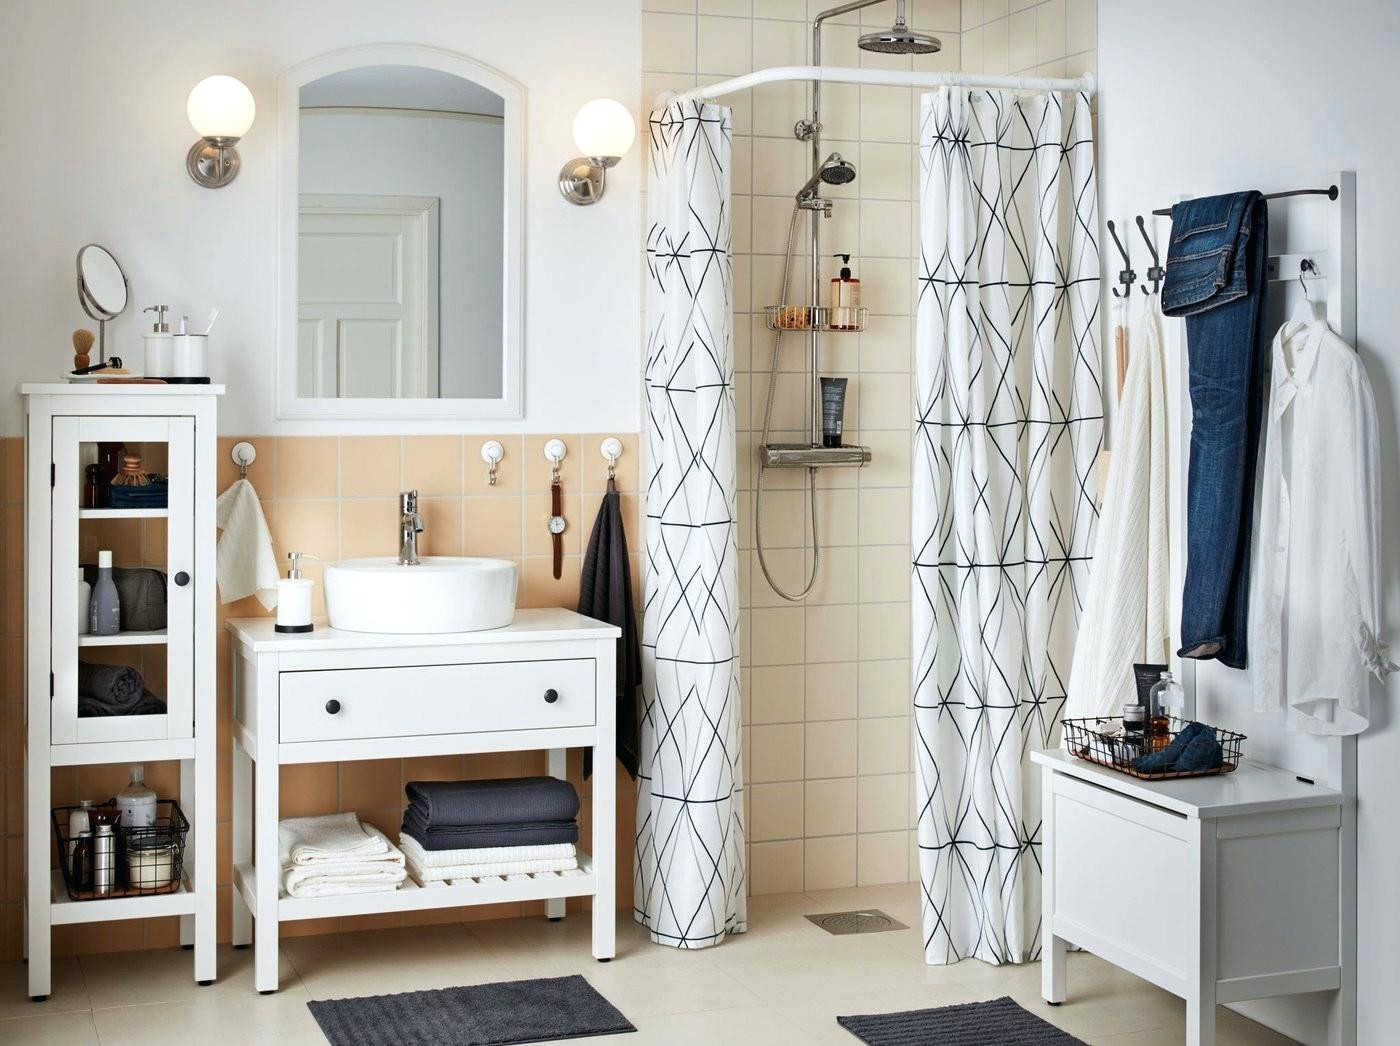 Ikea Badezimmer Regal
 Ikea Aufbewahrungssysteme Badezimmer Aufbewahrung Eckregal